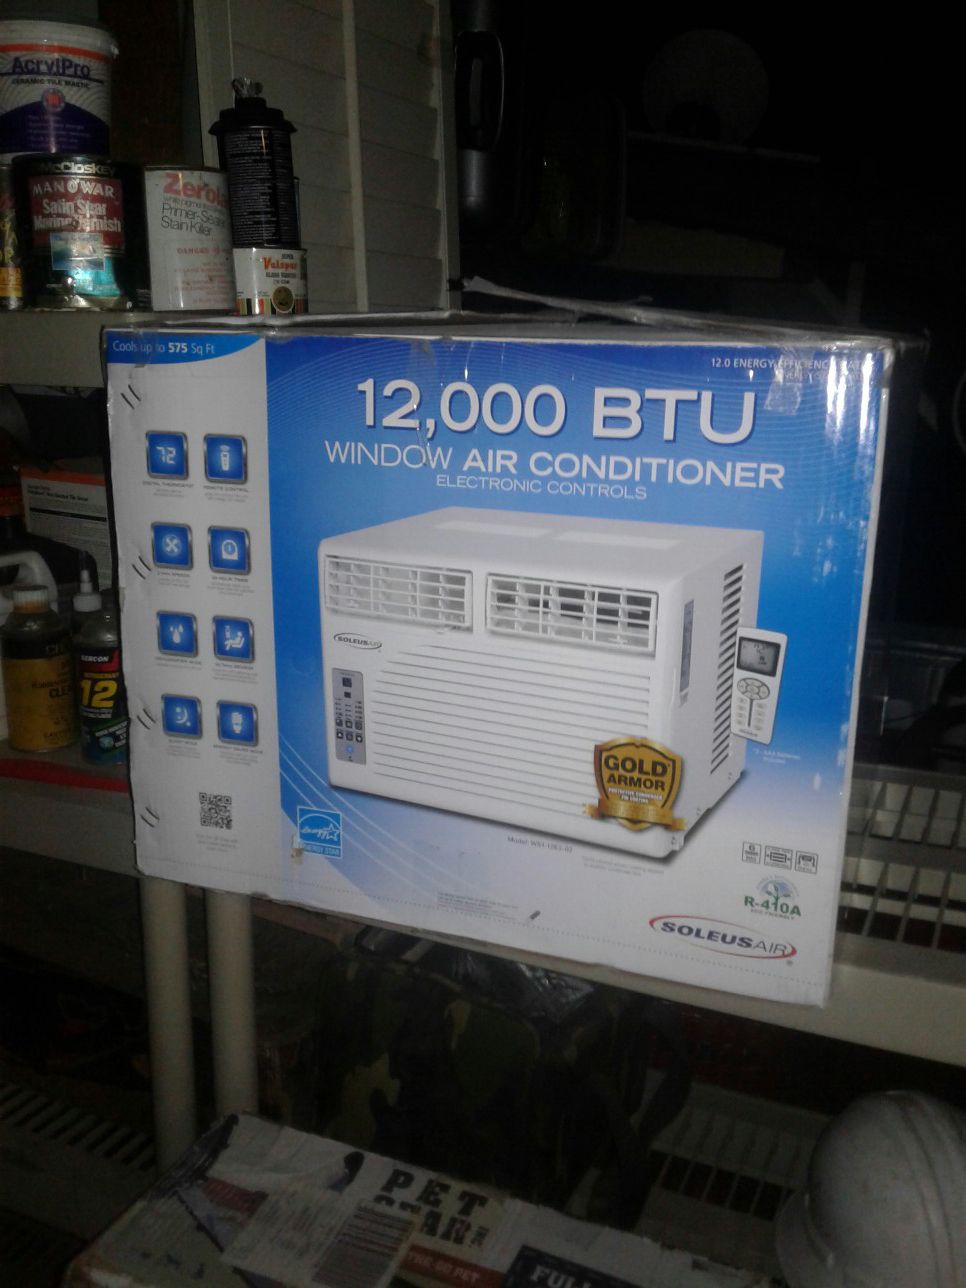 Soleus air 12000 BUT window air conditioner